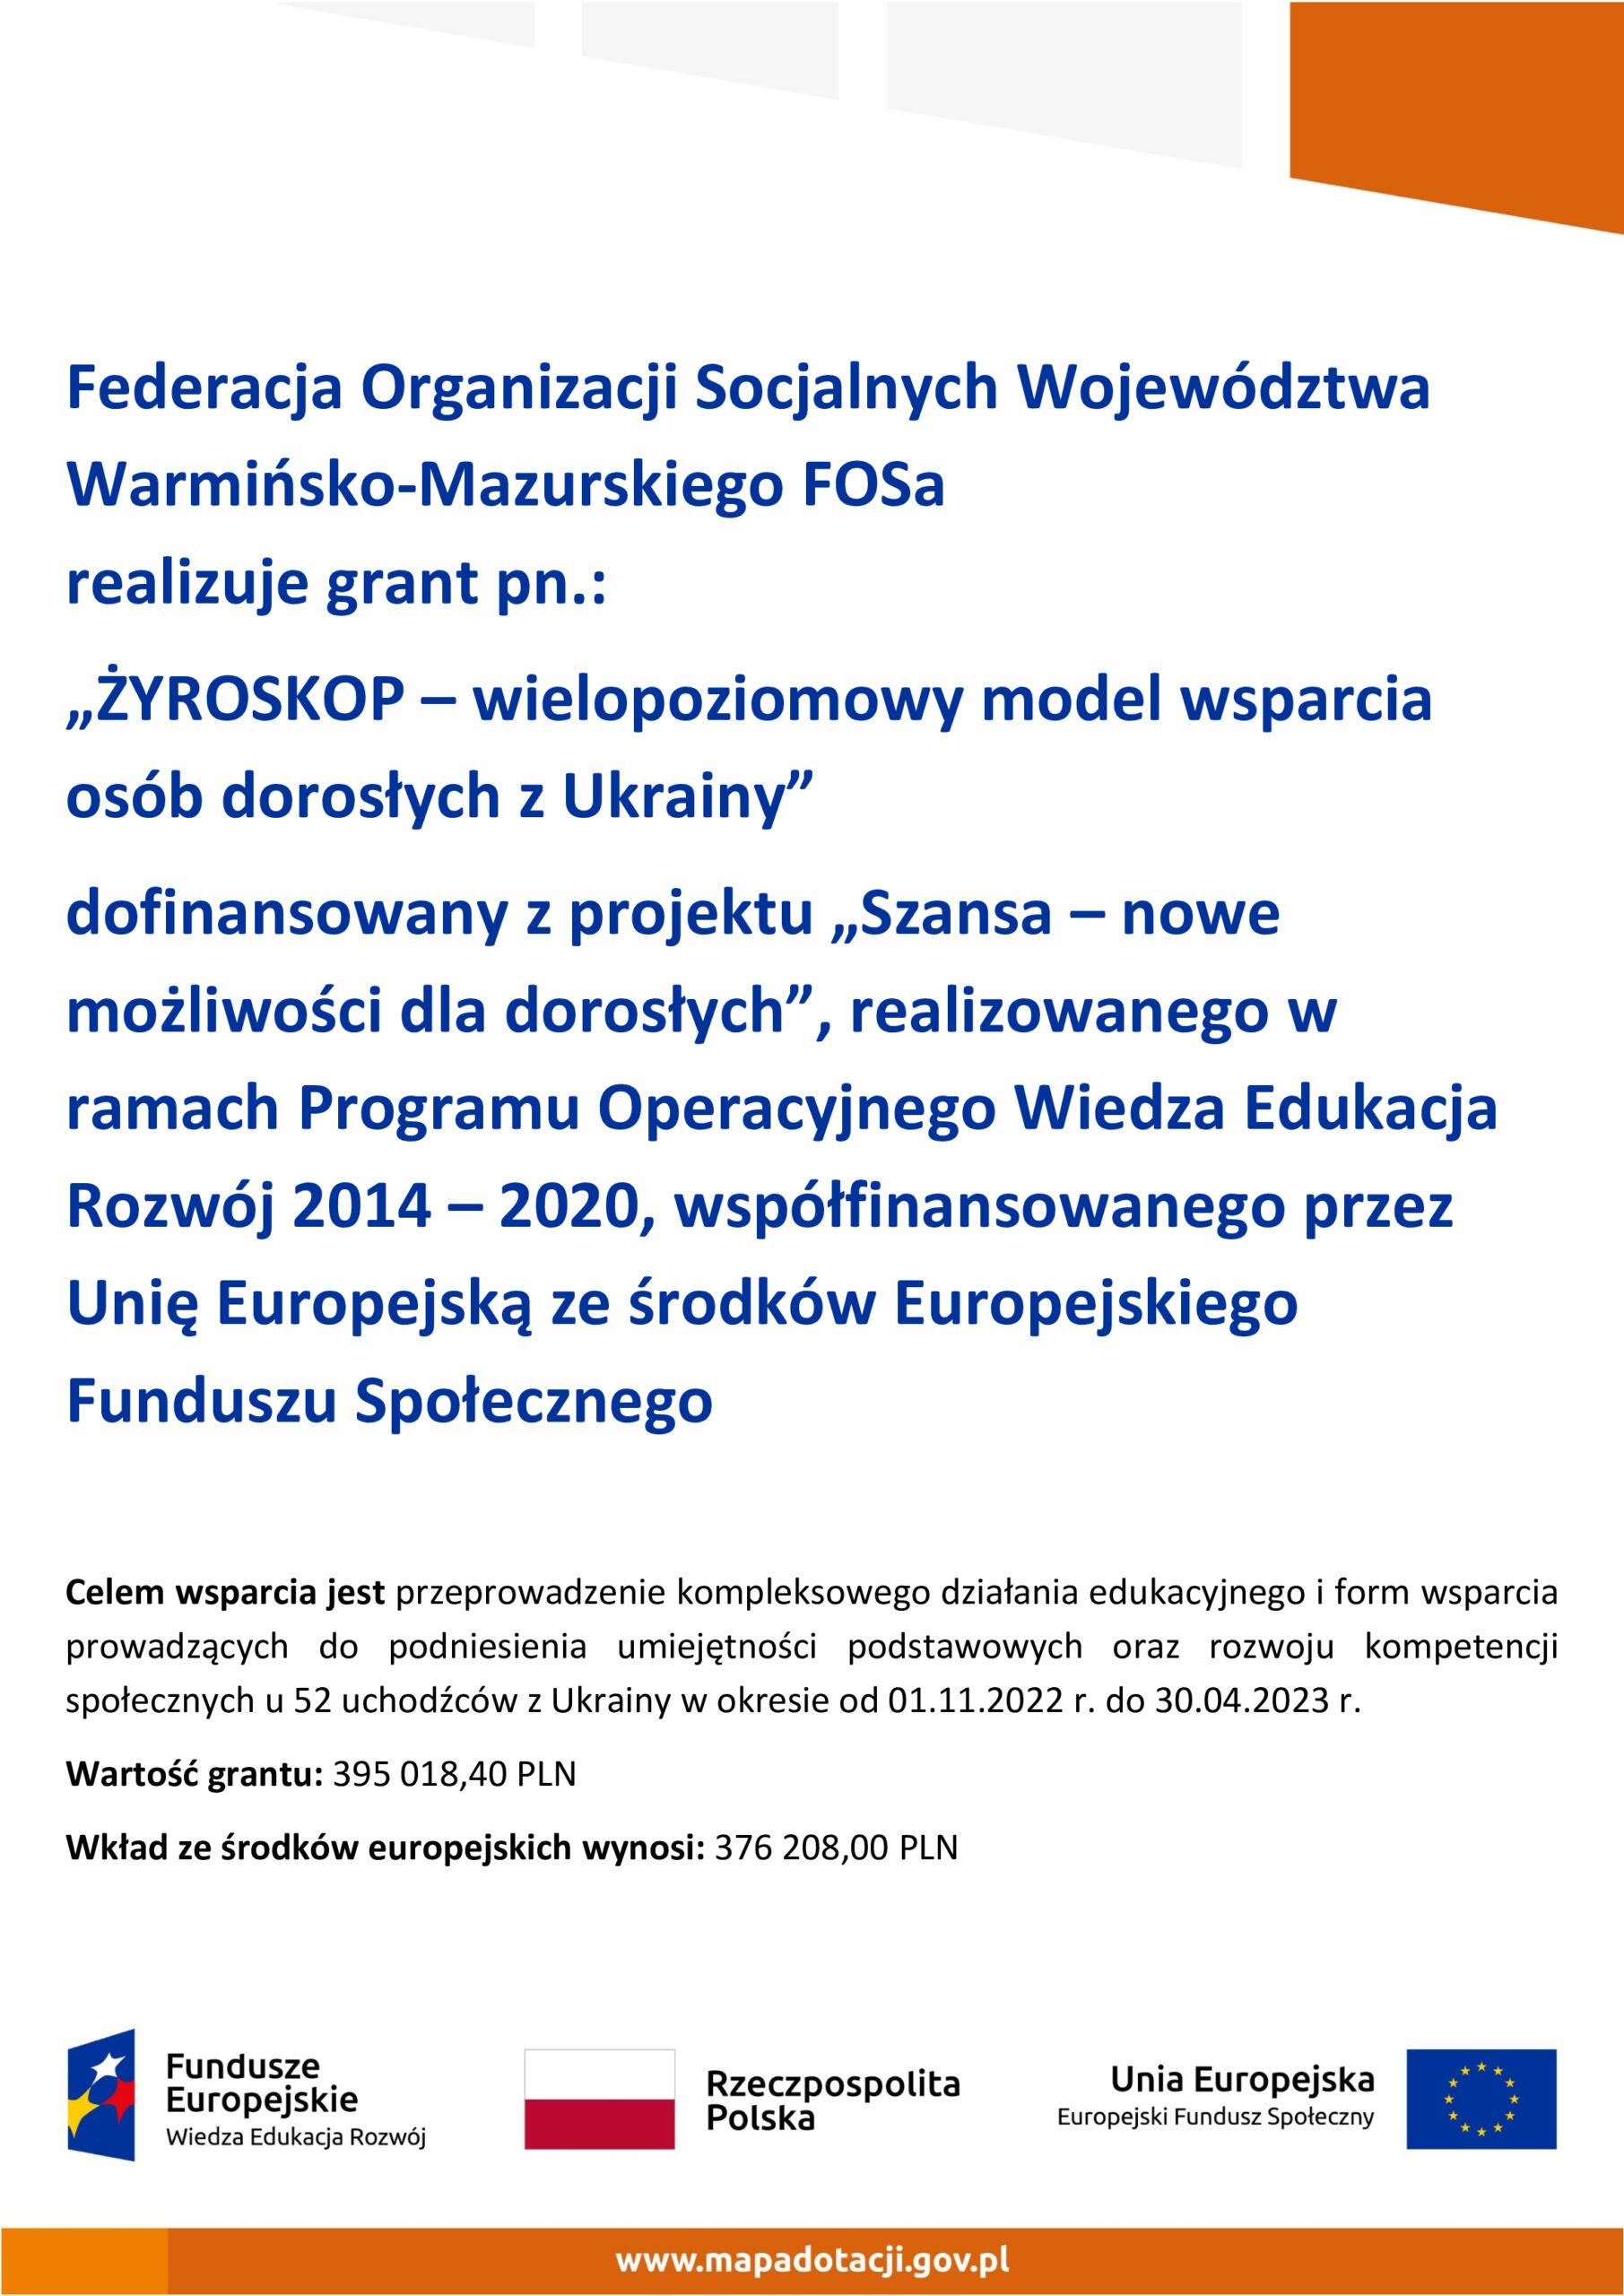 ŻYROSKOP – wielopoziomowy model wspierania osób dorosłych z Ukrainy